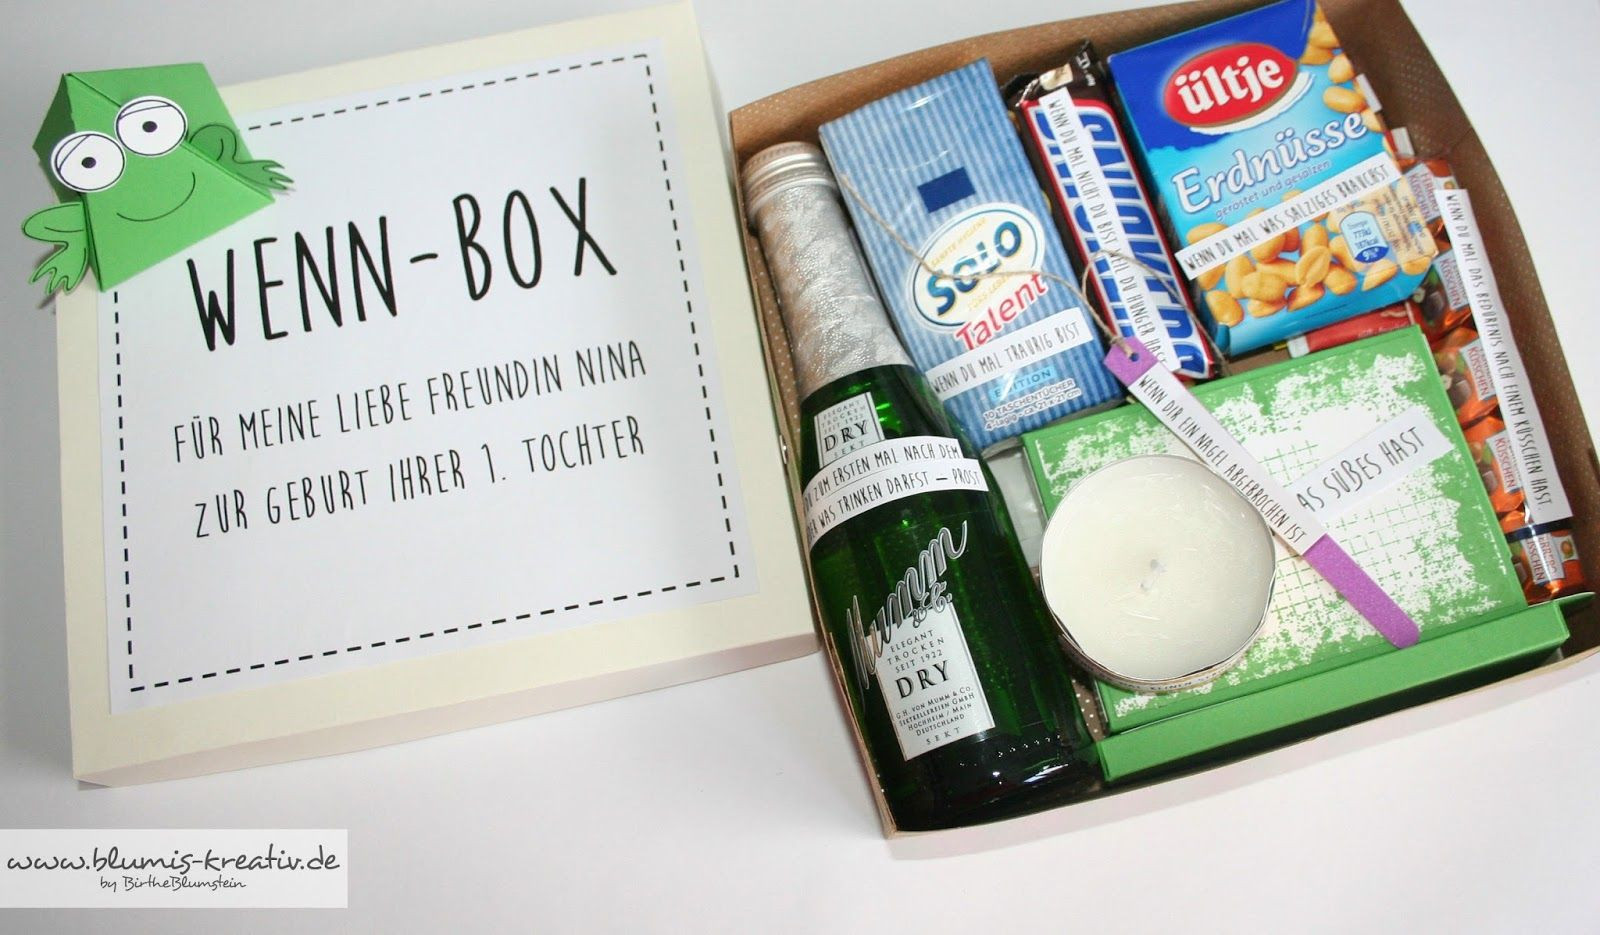 Coole Geschenke Für Freundin
 Blumis kreativ Blog "Wenn Box" als Geschenk für meine